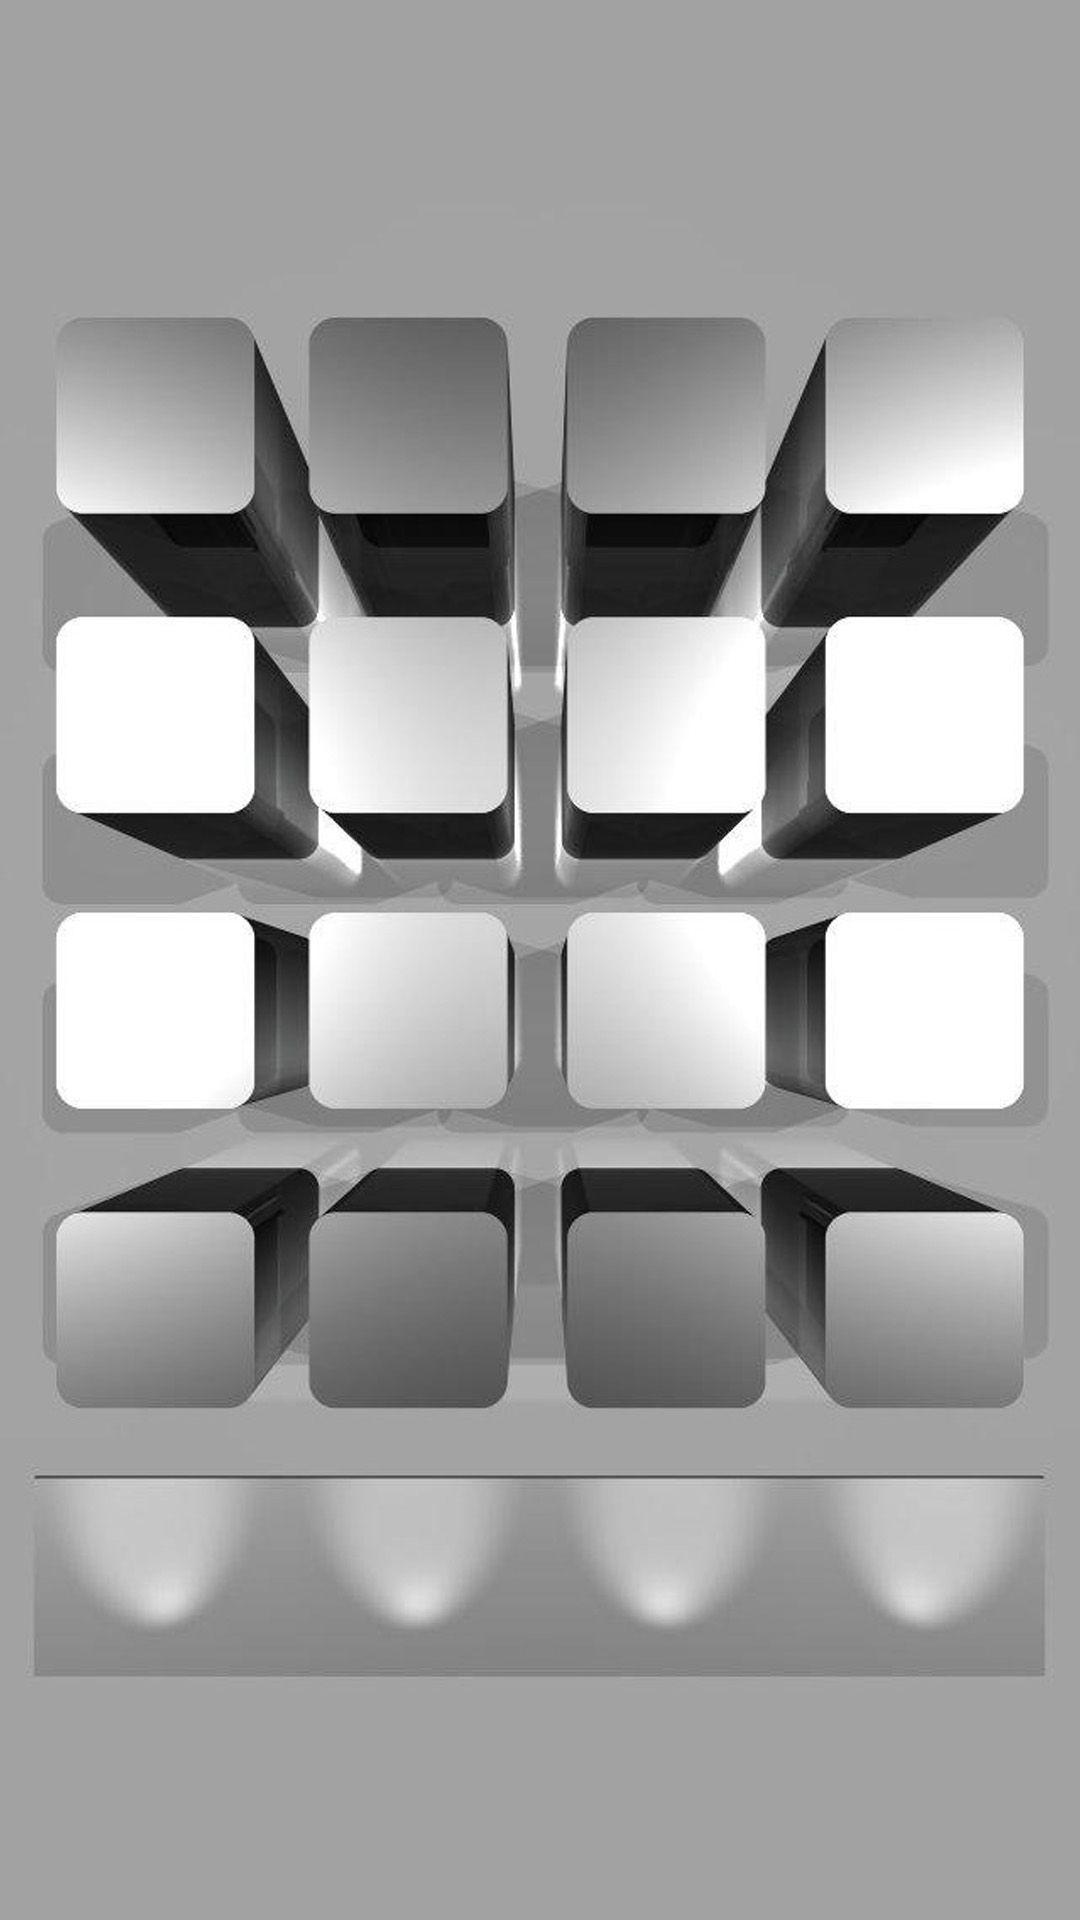 iPhone 7 Plus wallpaper 3D Boxes